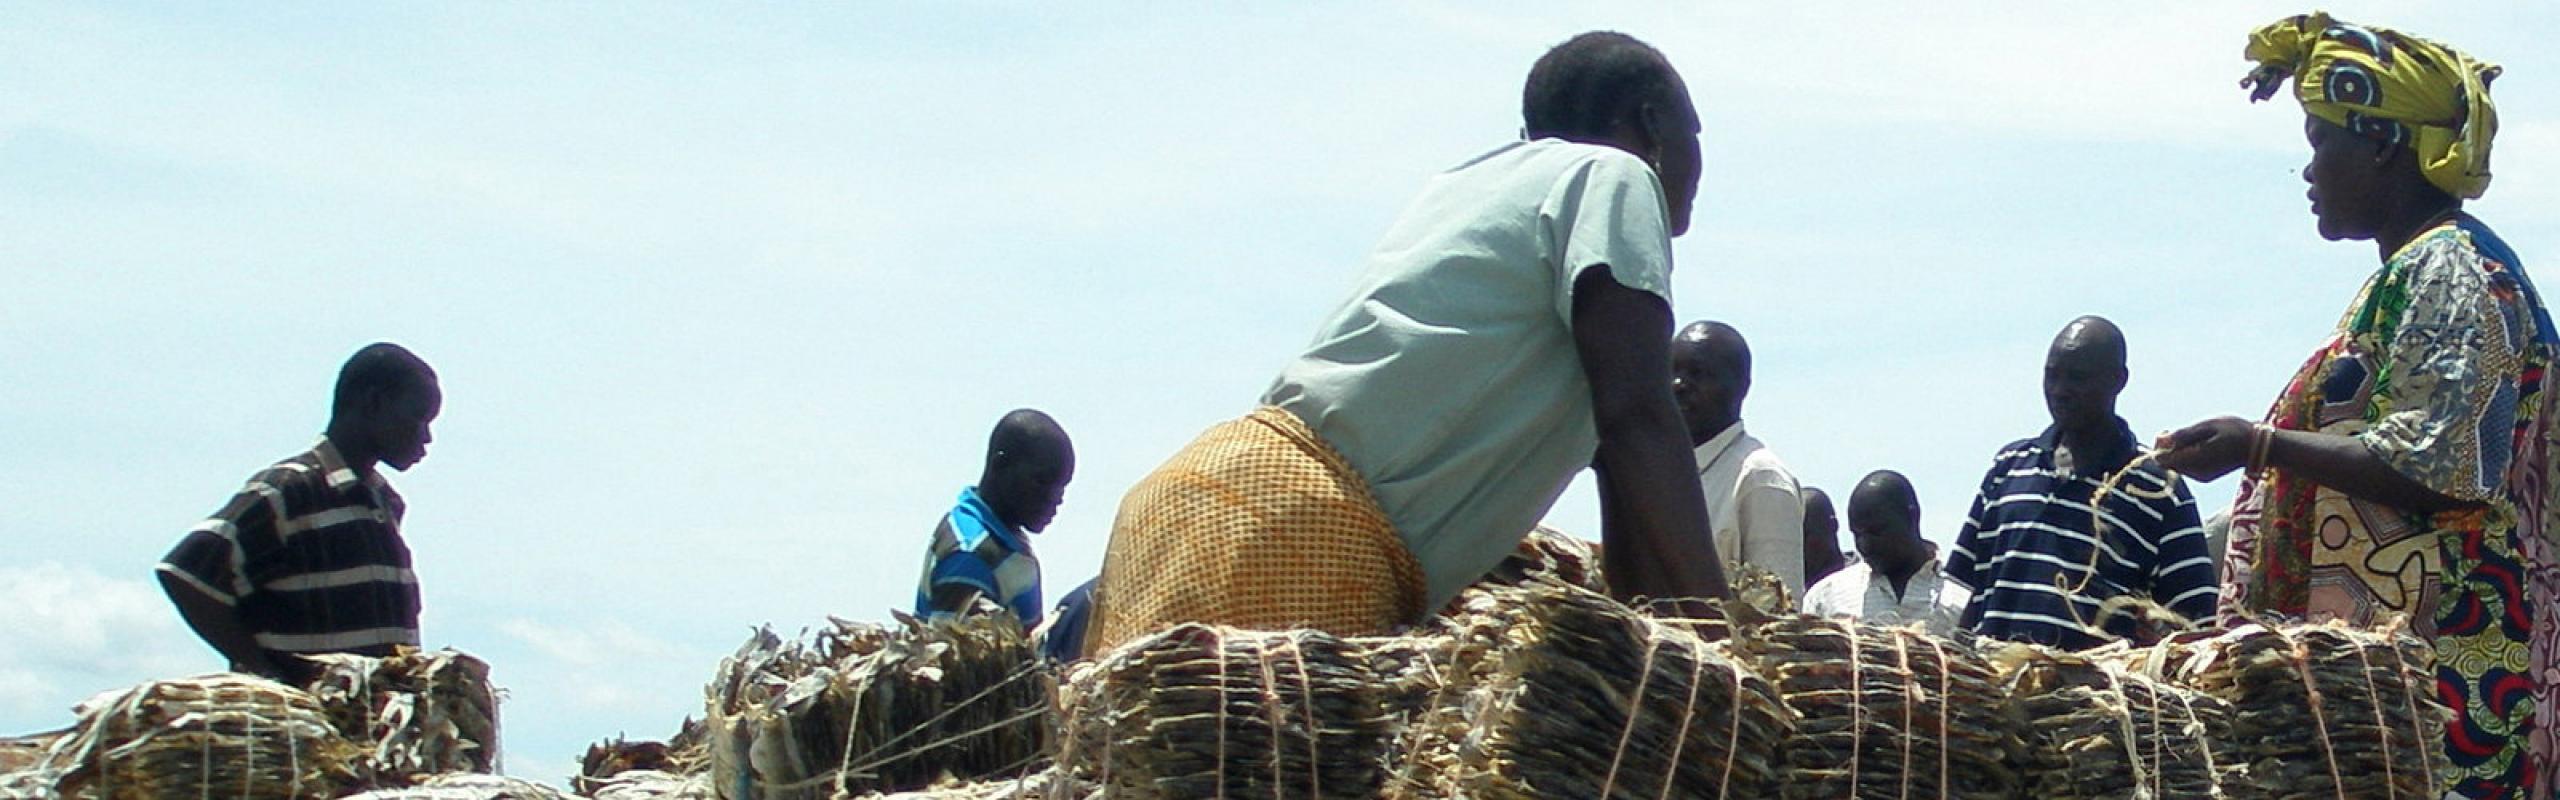 Commerçants de poisson séché dans le nord-ouest de l'Ouganda au bord du lac Albert. Une femme est forte parmi les autres commerçants.